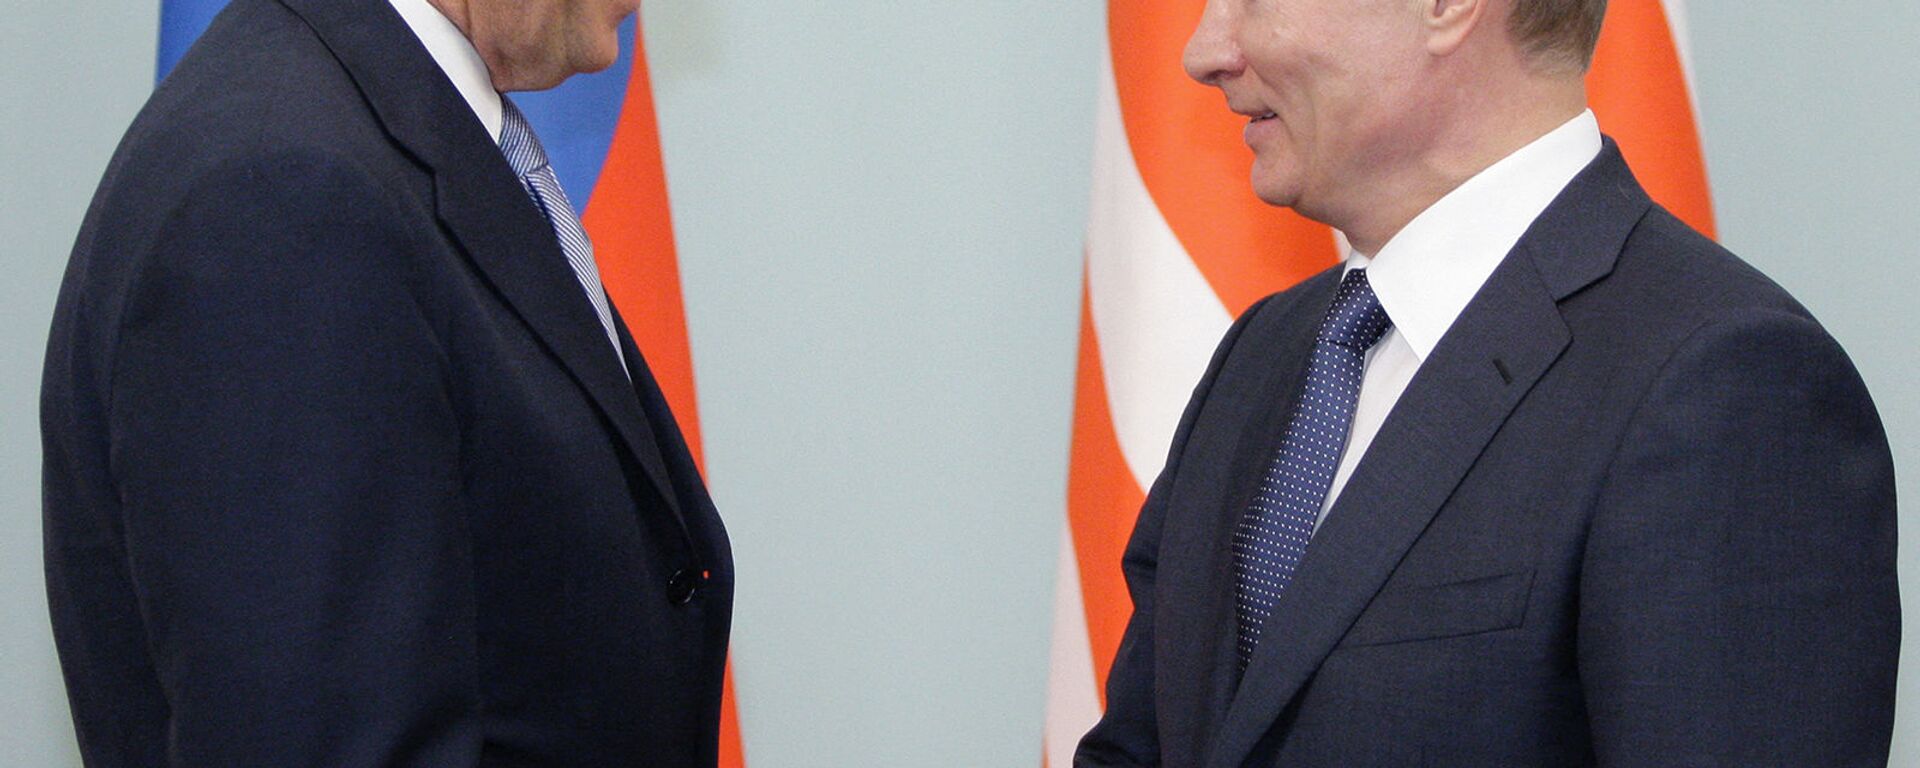 Владимир Путин и Джо Байден обмениваются рукопожатием - Sputnik Грузия, 1920, 26.05.2021